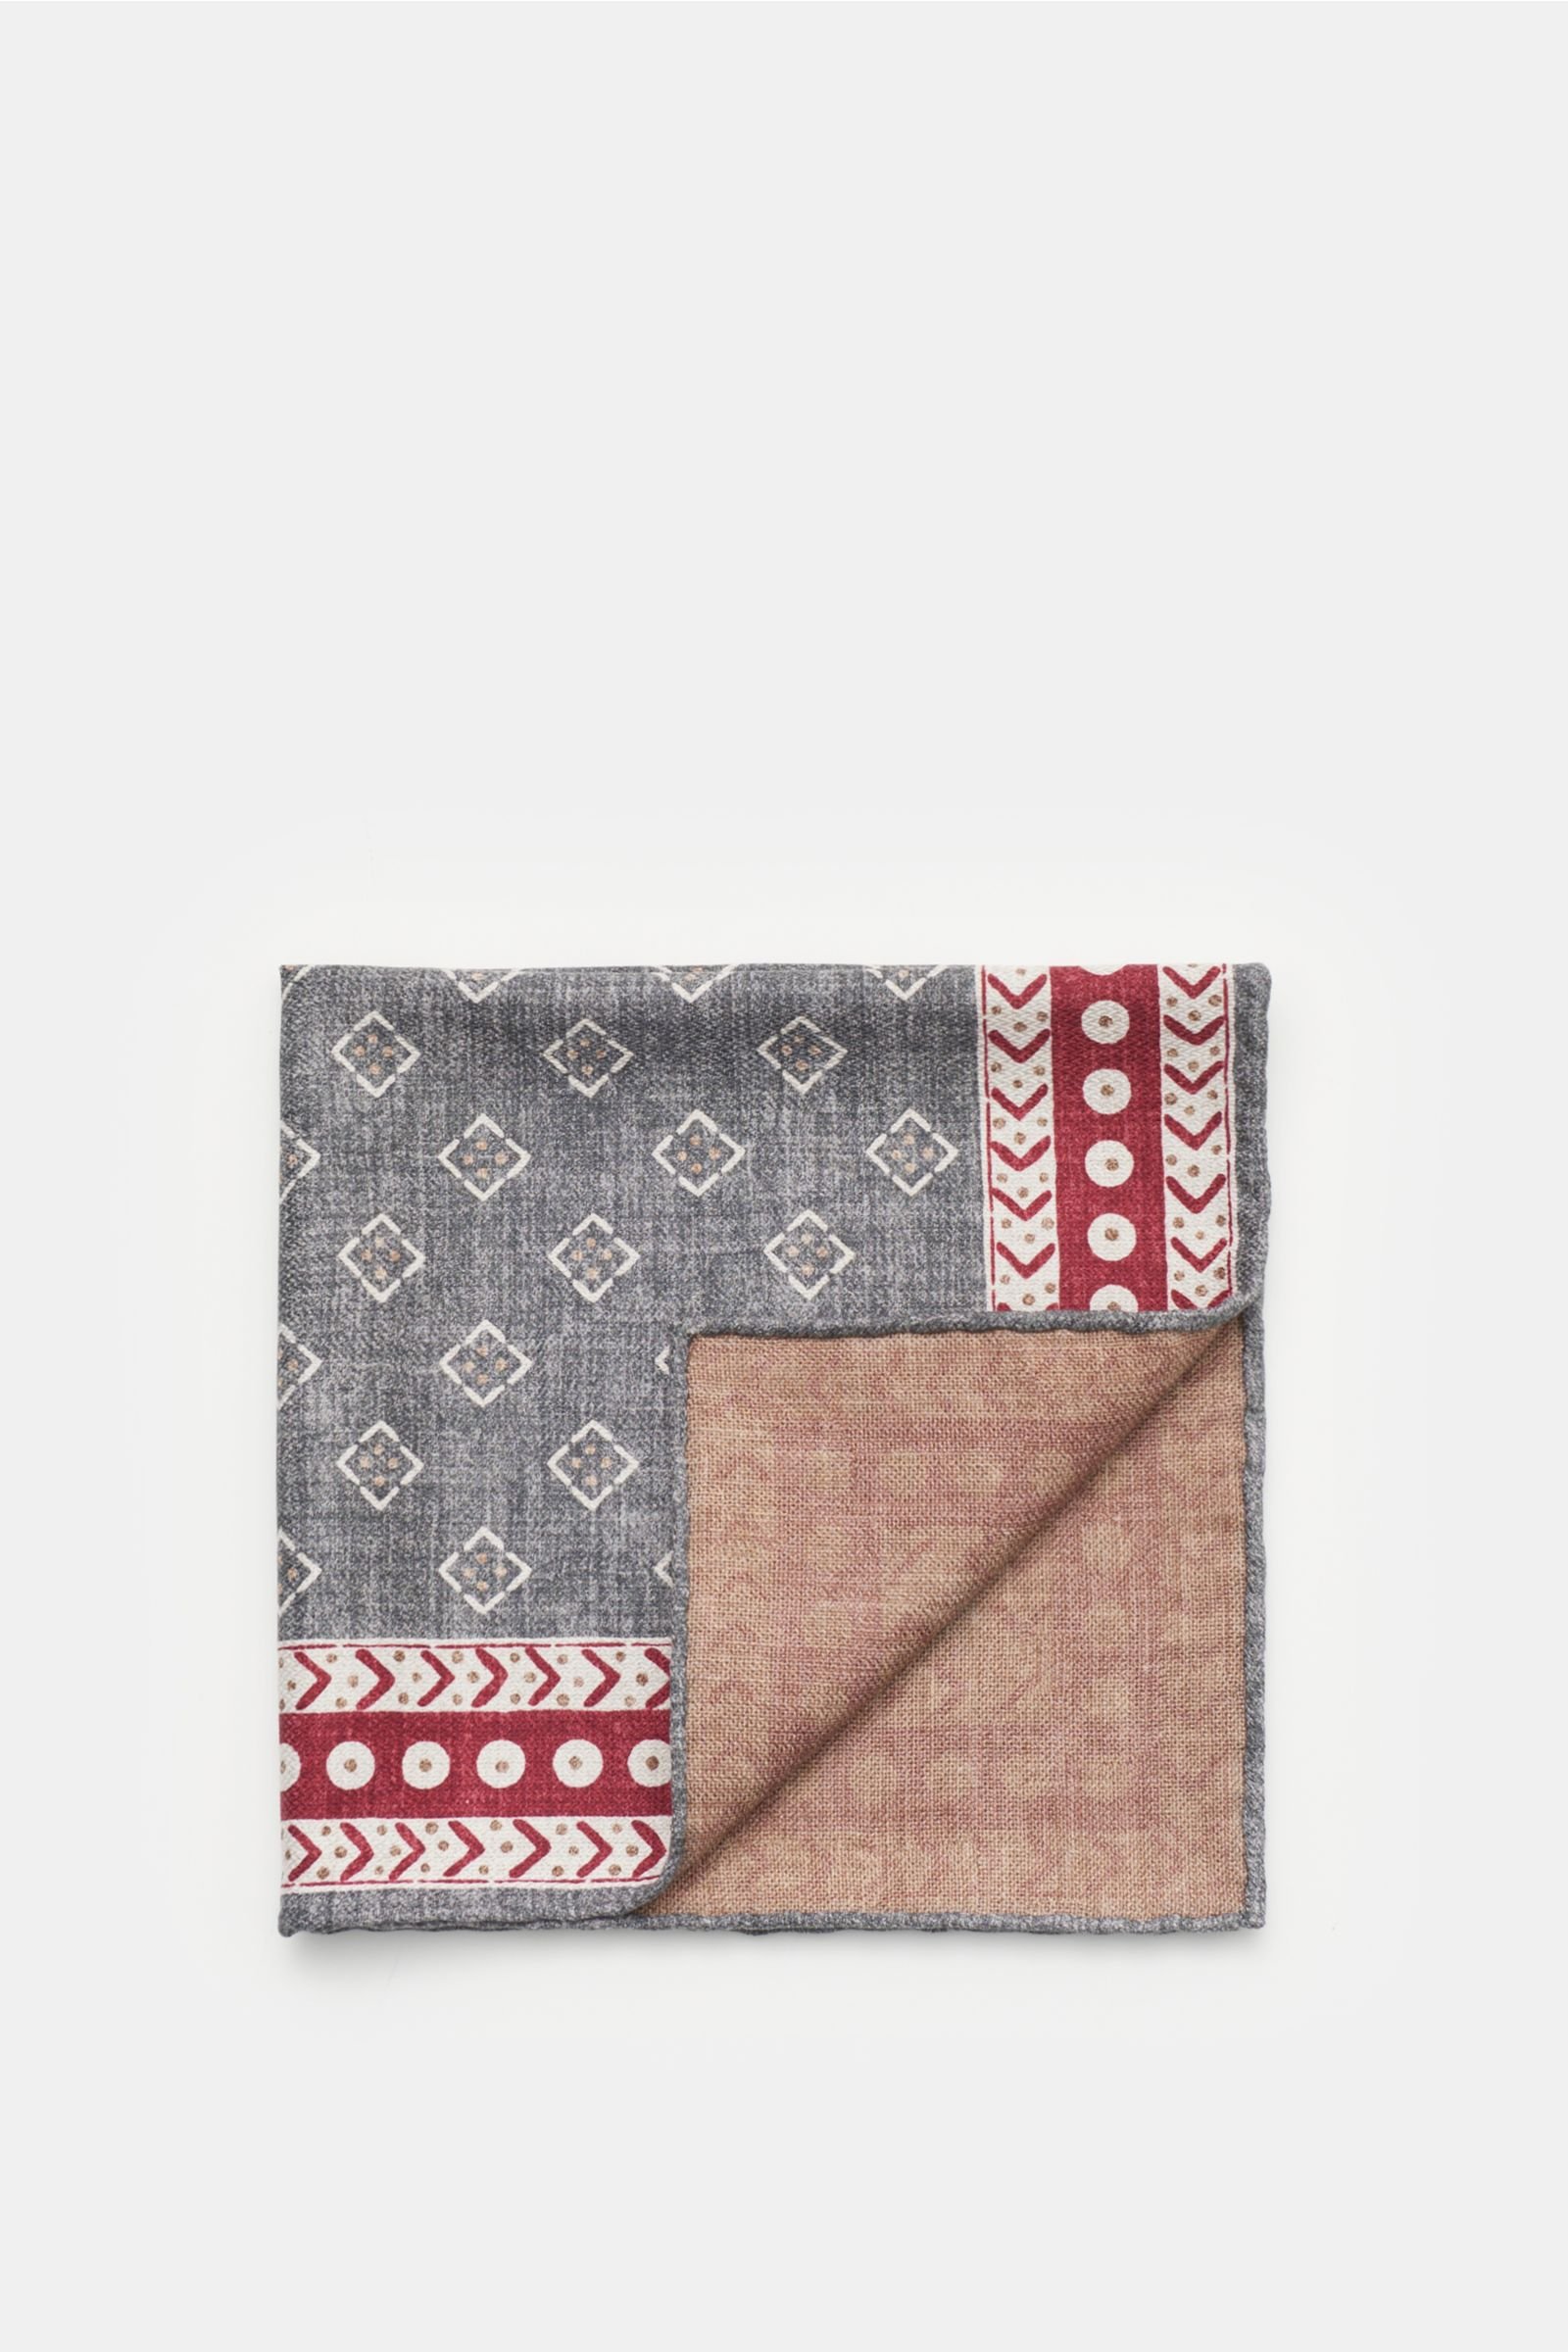 Pocket square grey/burgundy patterned